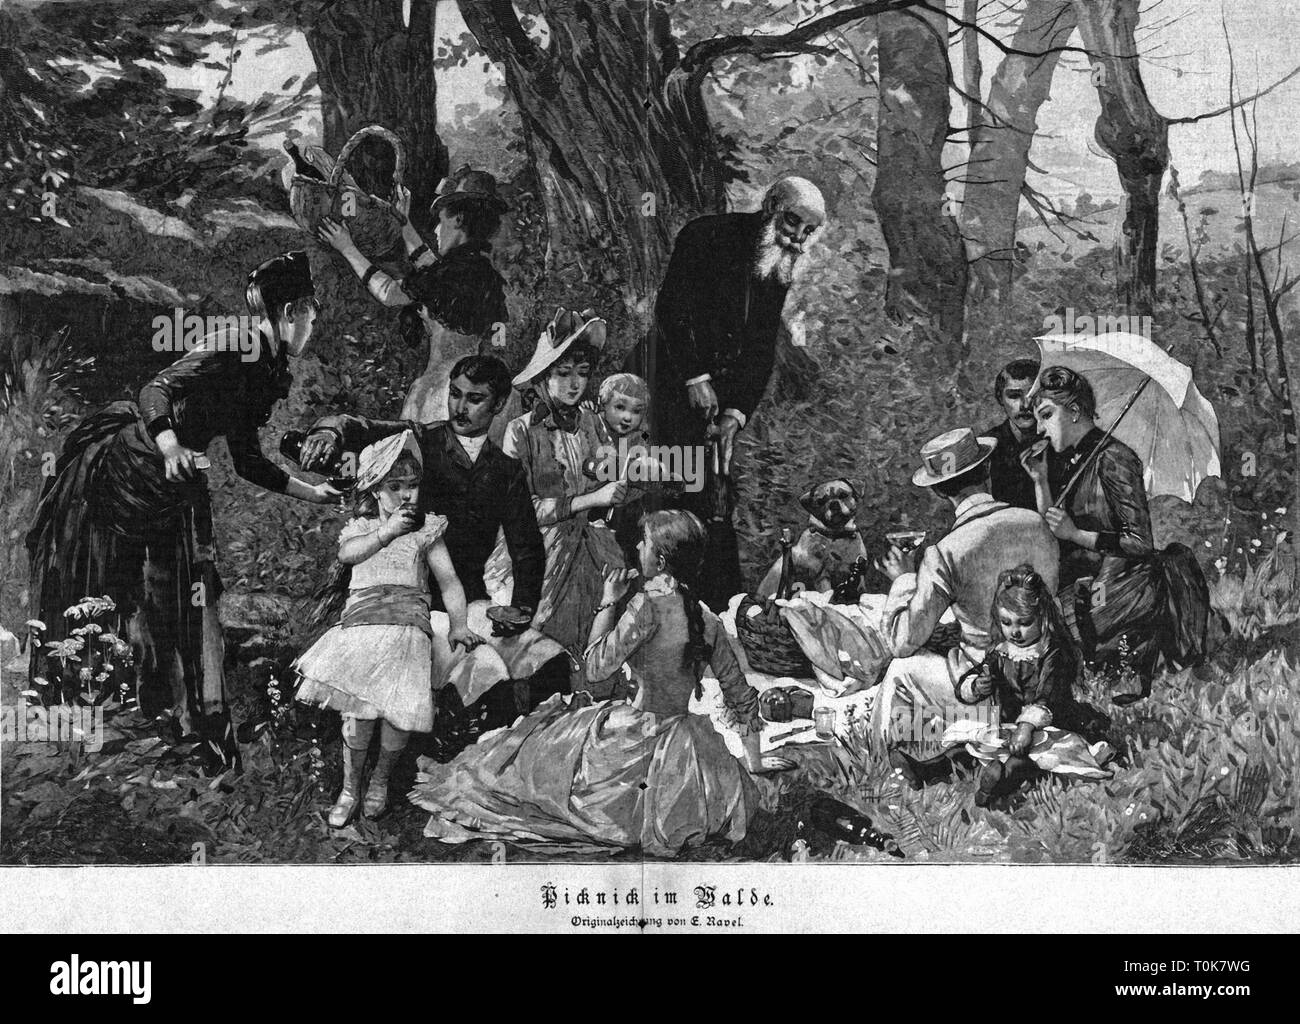 Gastronomie, Picknick, Familie mit Picknick im Wald, nach der ursprünglichen Zeichnung von E.Ravel, Holzstich, 1886, Additional-Rights - Clearance-Info - Not-Available Stockfoto